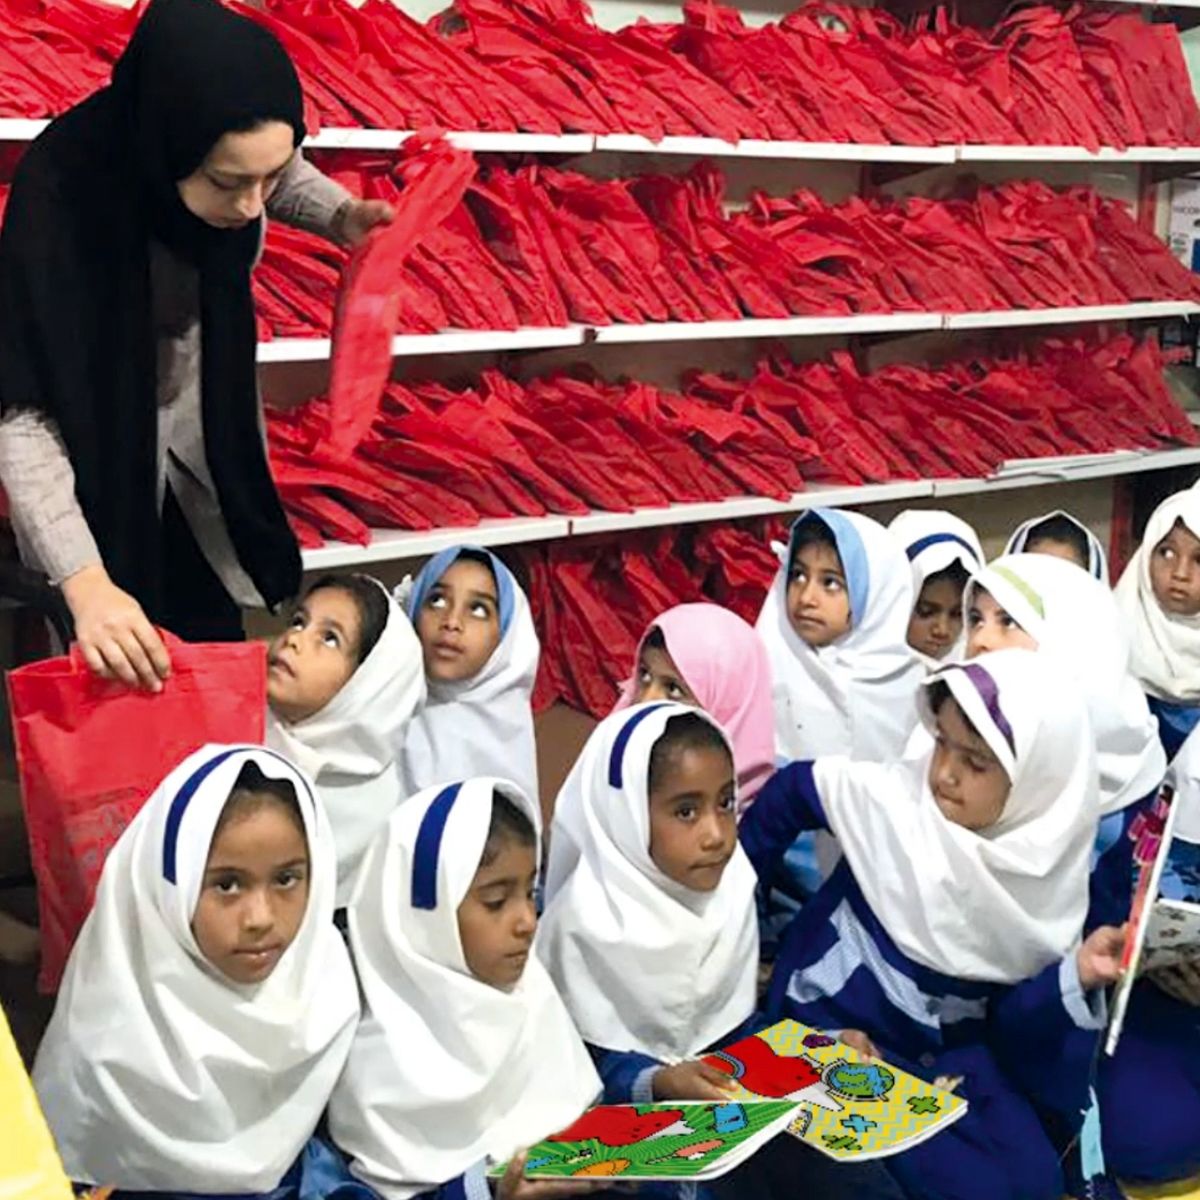 هدایایی به رسم دوستی توسط شرکت مهرام به دانش آموزان روستای محروم دلگان واقع در سیستان و بلوچستان